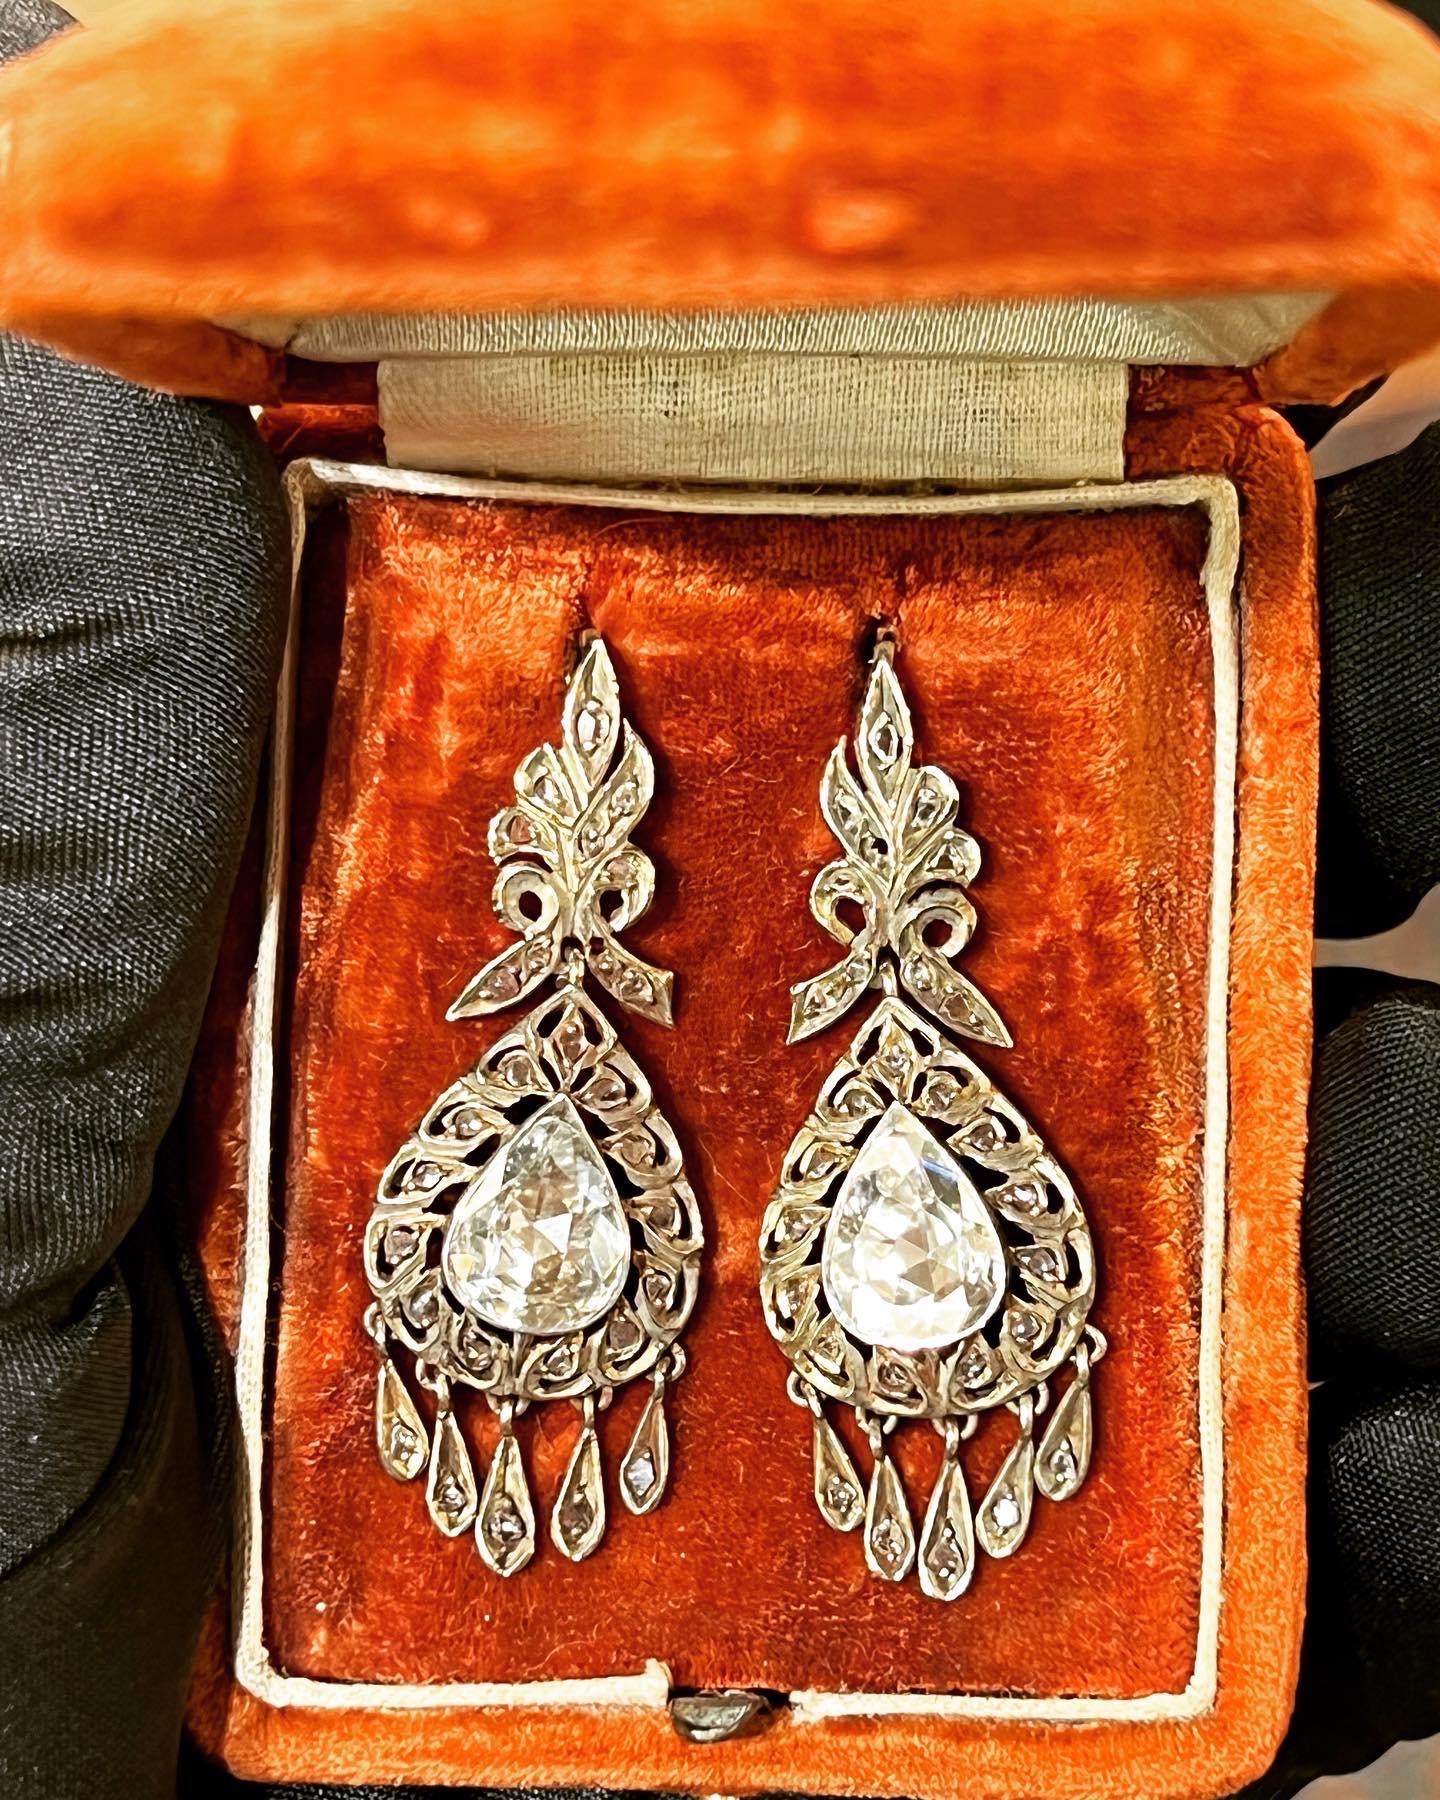 Ein absolut großartiges Paar Diamantohrringe im Rosenschliff aus der georgianischen Ära (1830er Jahre).
Diese unglaublichen Ohrringe sind aus 9 Karat vergoldetem Silber gefertigt und bestechen durch ihre funkelnden Diamanten im Rosenschliff, etwa 6